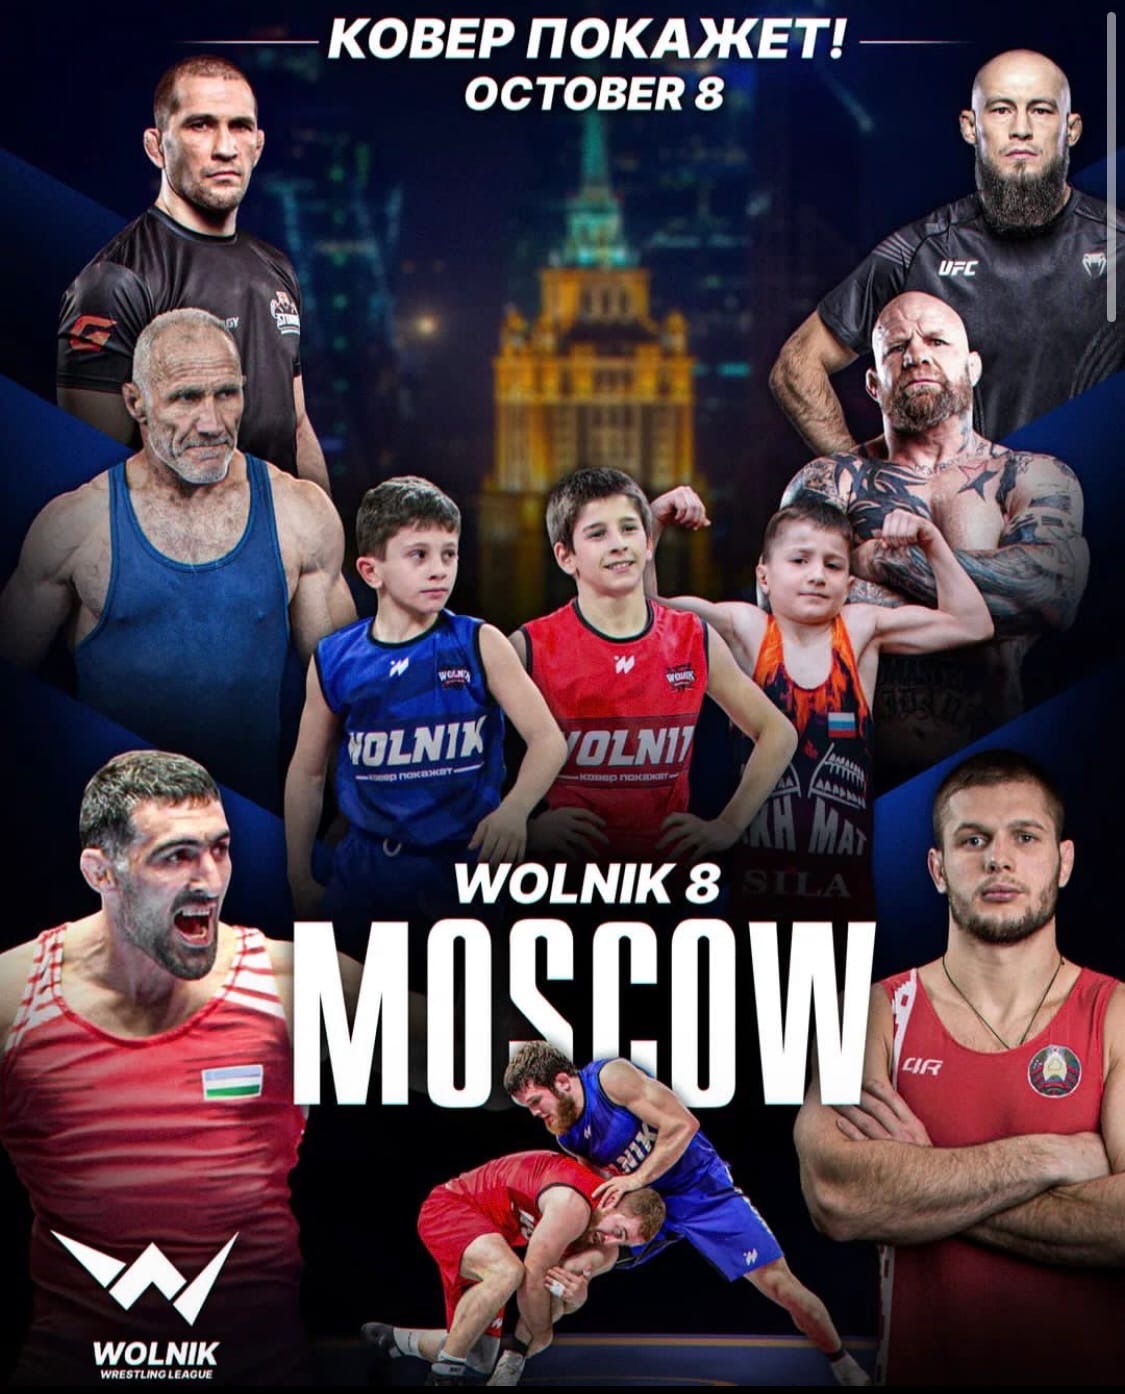 Турнир лиги Wolnik пройдет 8 октября в Москве